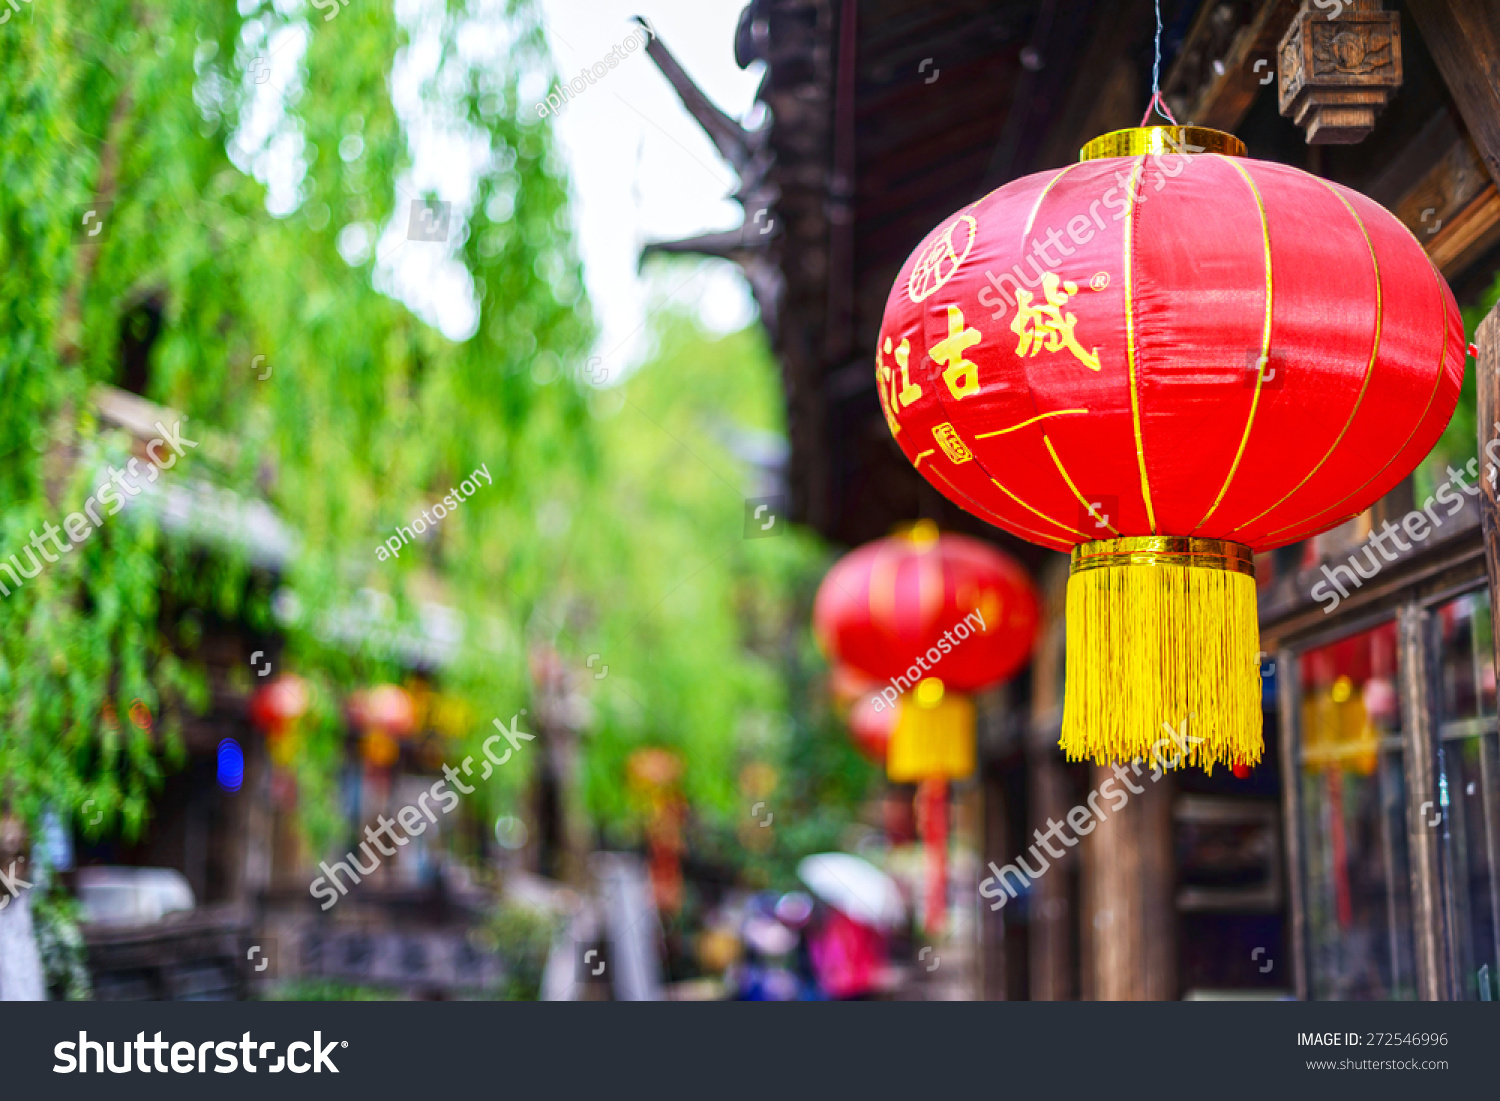 3月30日:中国灯笼。灯笼上的文字翻译成英文是